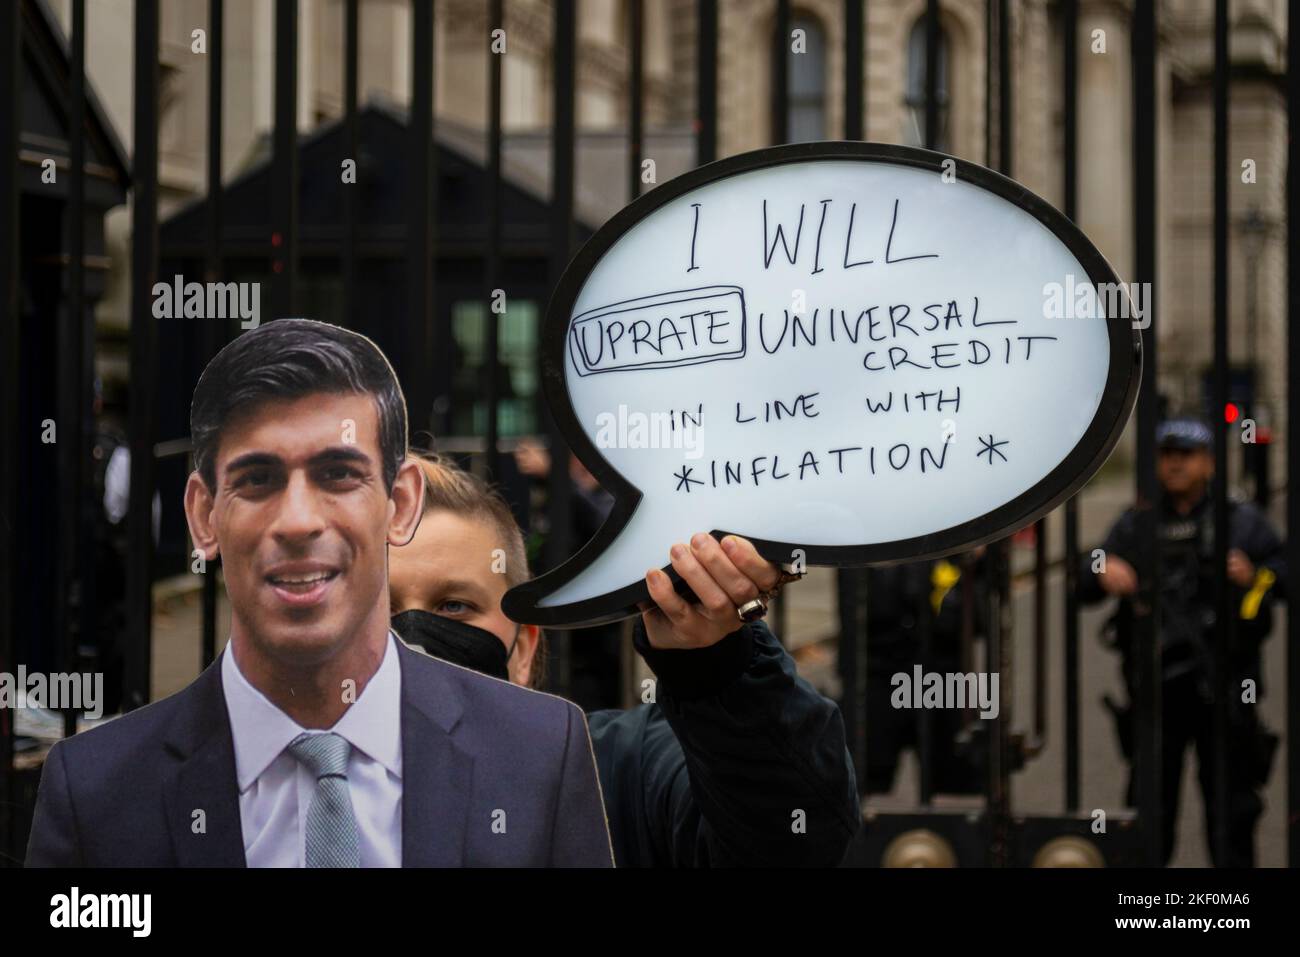 Protest vor der Downing Street, bei dem eine Sprechblase auf einen Rishi Sunak-Ausschnitt gesetzt wird, der zitiert: „Ich werde den Universalkredit im Einklang mit der Inflation aufpolieren“ Stockfoto